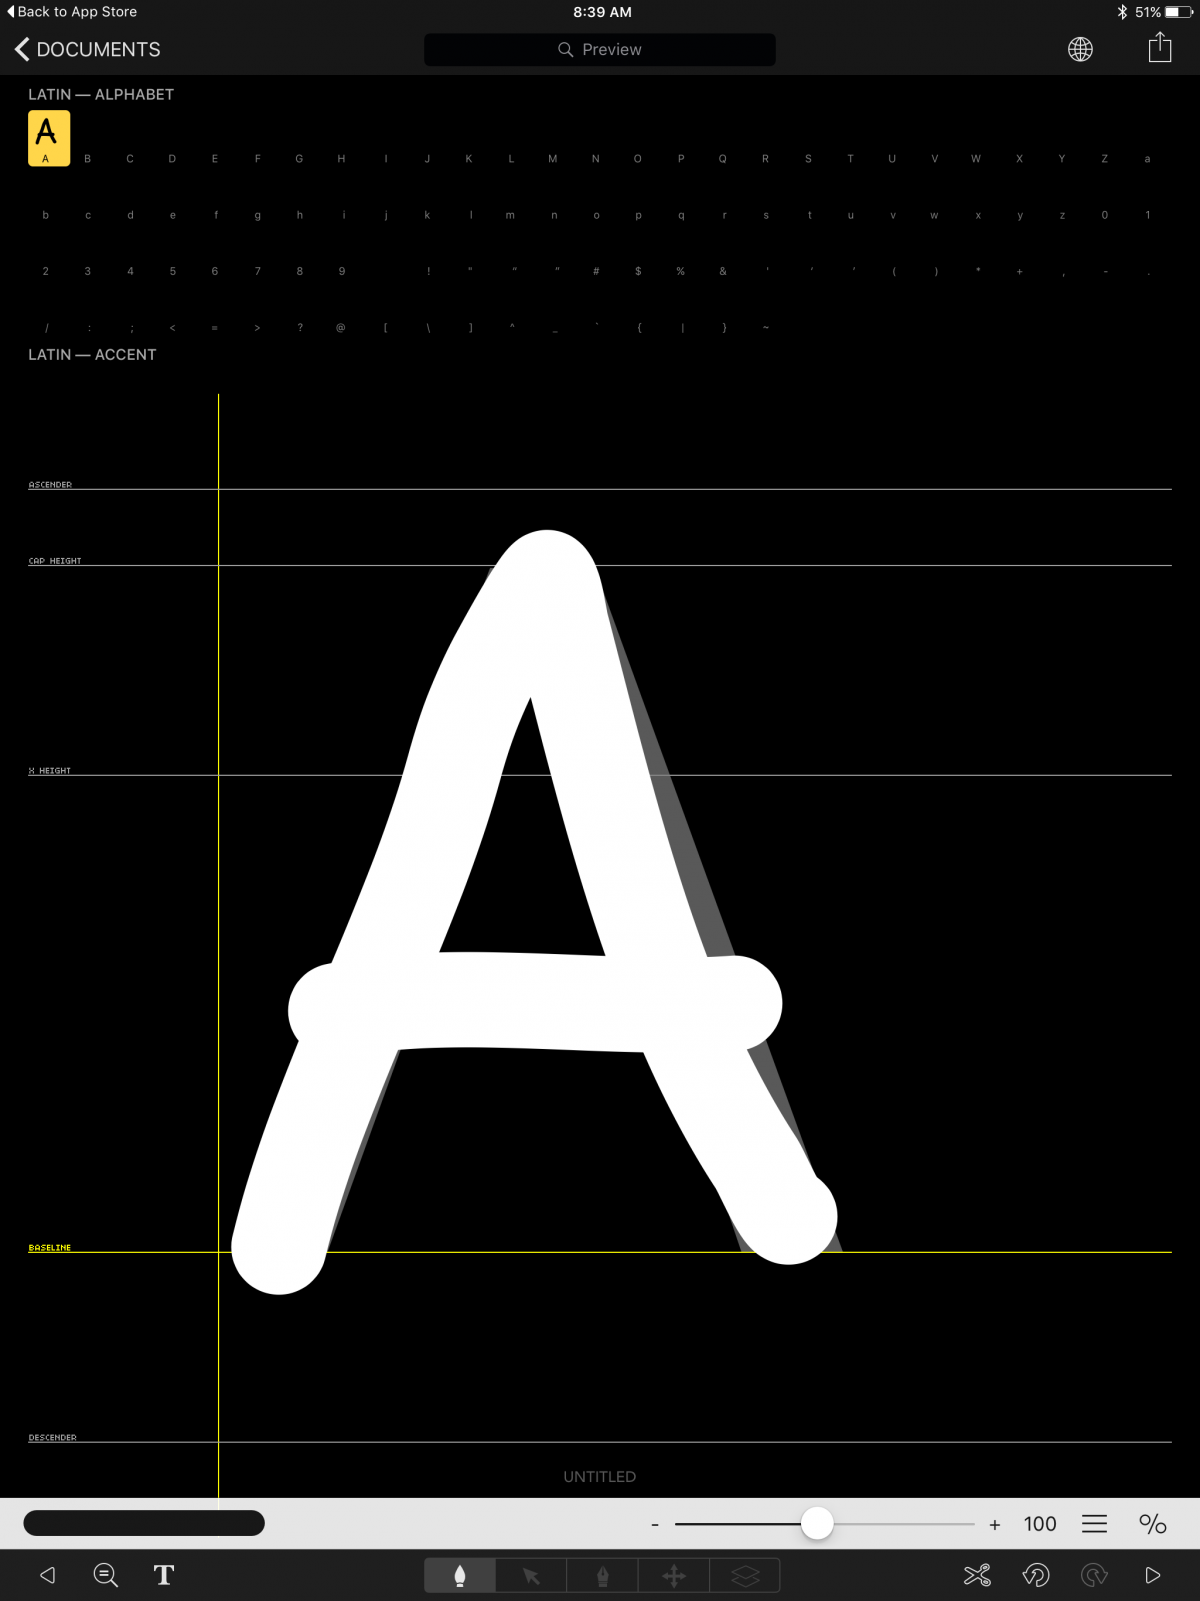 Font chữ miễn phí
Bạn đang tìm kiếm loại font chữ độc đáo và miễn phí để sử dụng trong các thiết kế của mình? Đến với chúng tôi, bạn sẽ có nhiều lựa chọn với hàng trăm font chữ đa dạng và phong phú. Hãy truy cập vào bộ sưu tập font miễn phí của chúng tôi để lựa chọn font chữ phù hợp với ý tưởng sáng tạo của bạn.